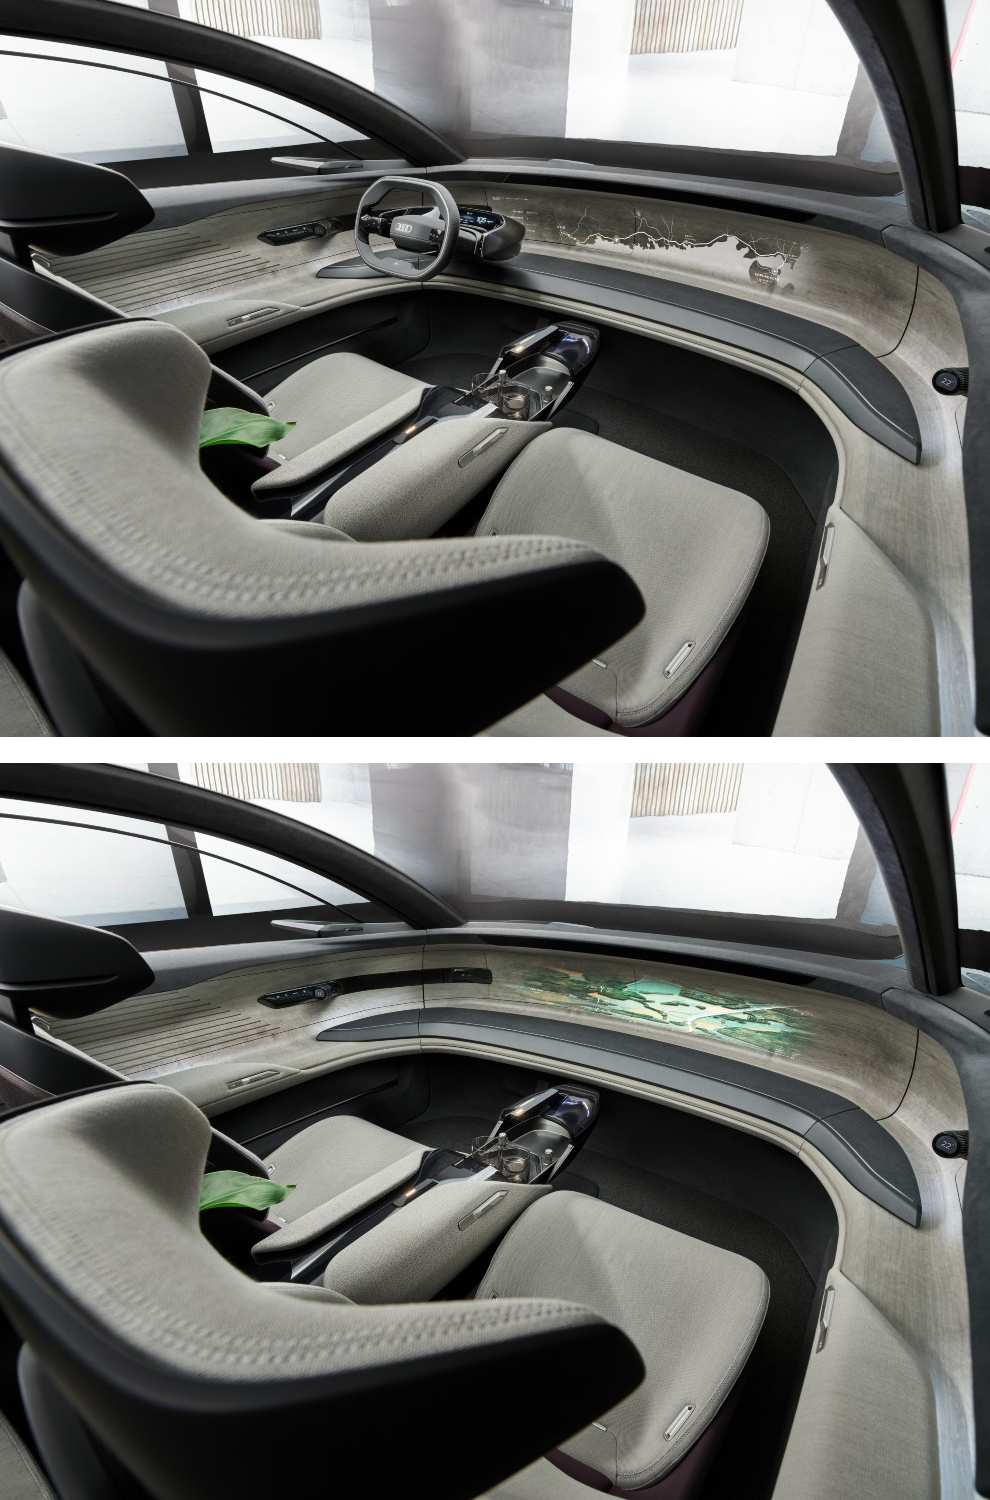 Audi grandsphere - IAA 2021 - Salon del Automovil de Munich - prototipo - coche autnomo